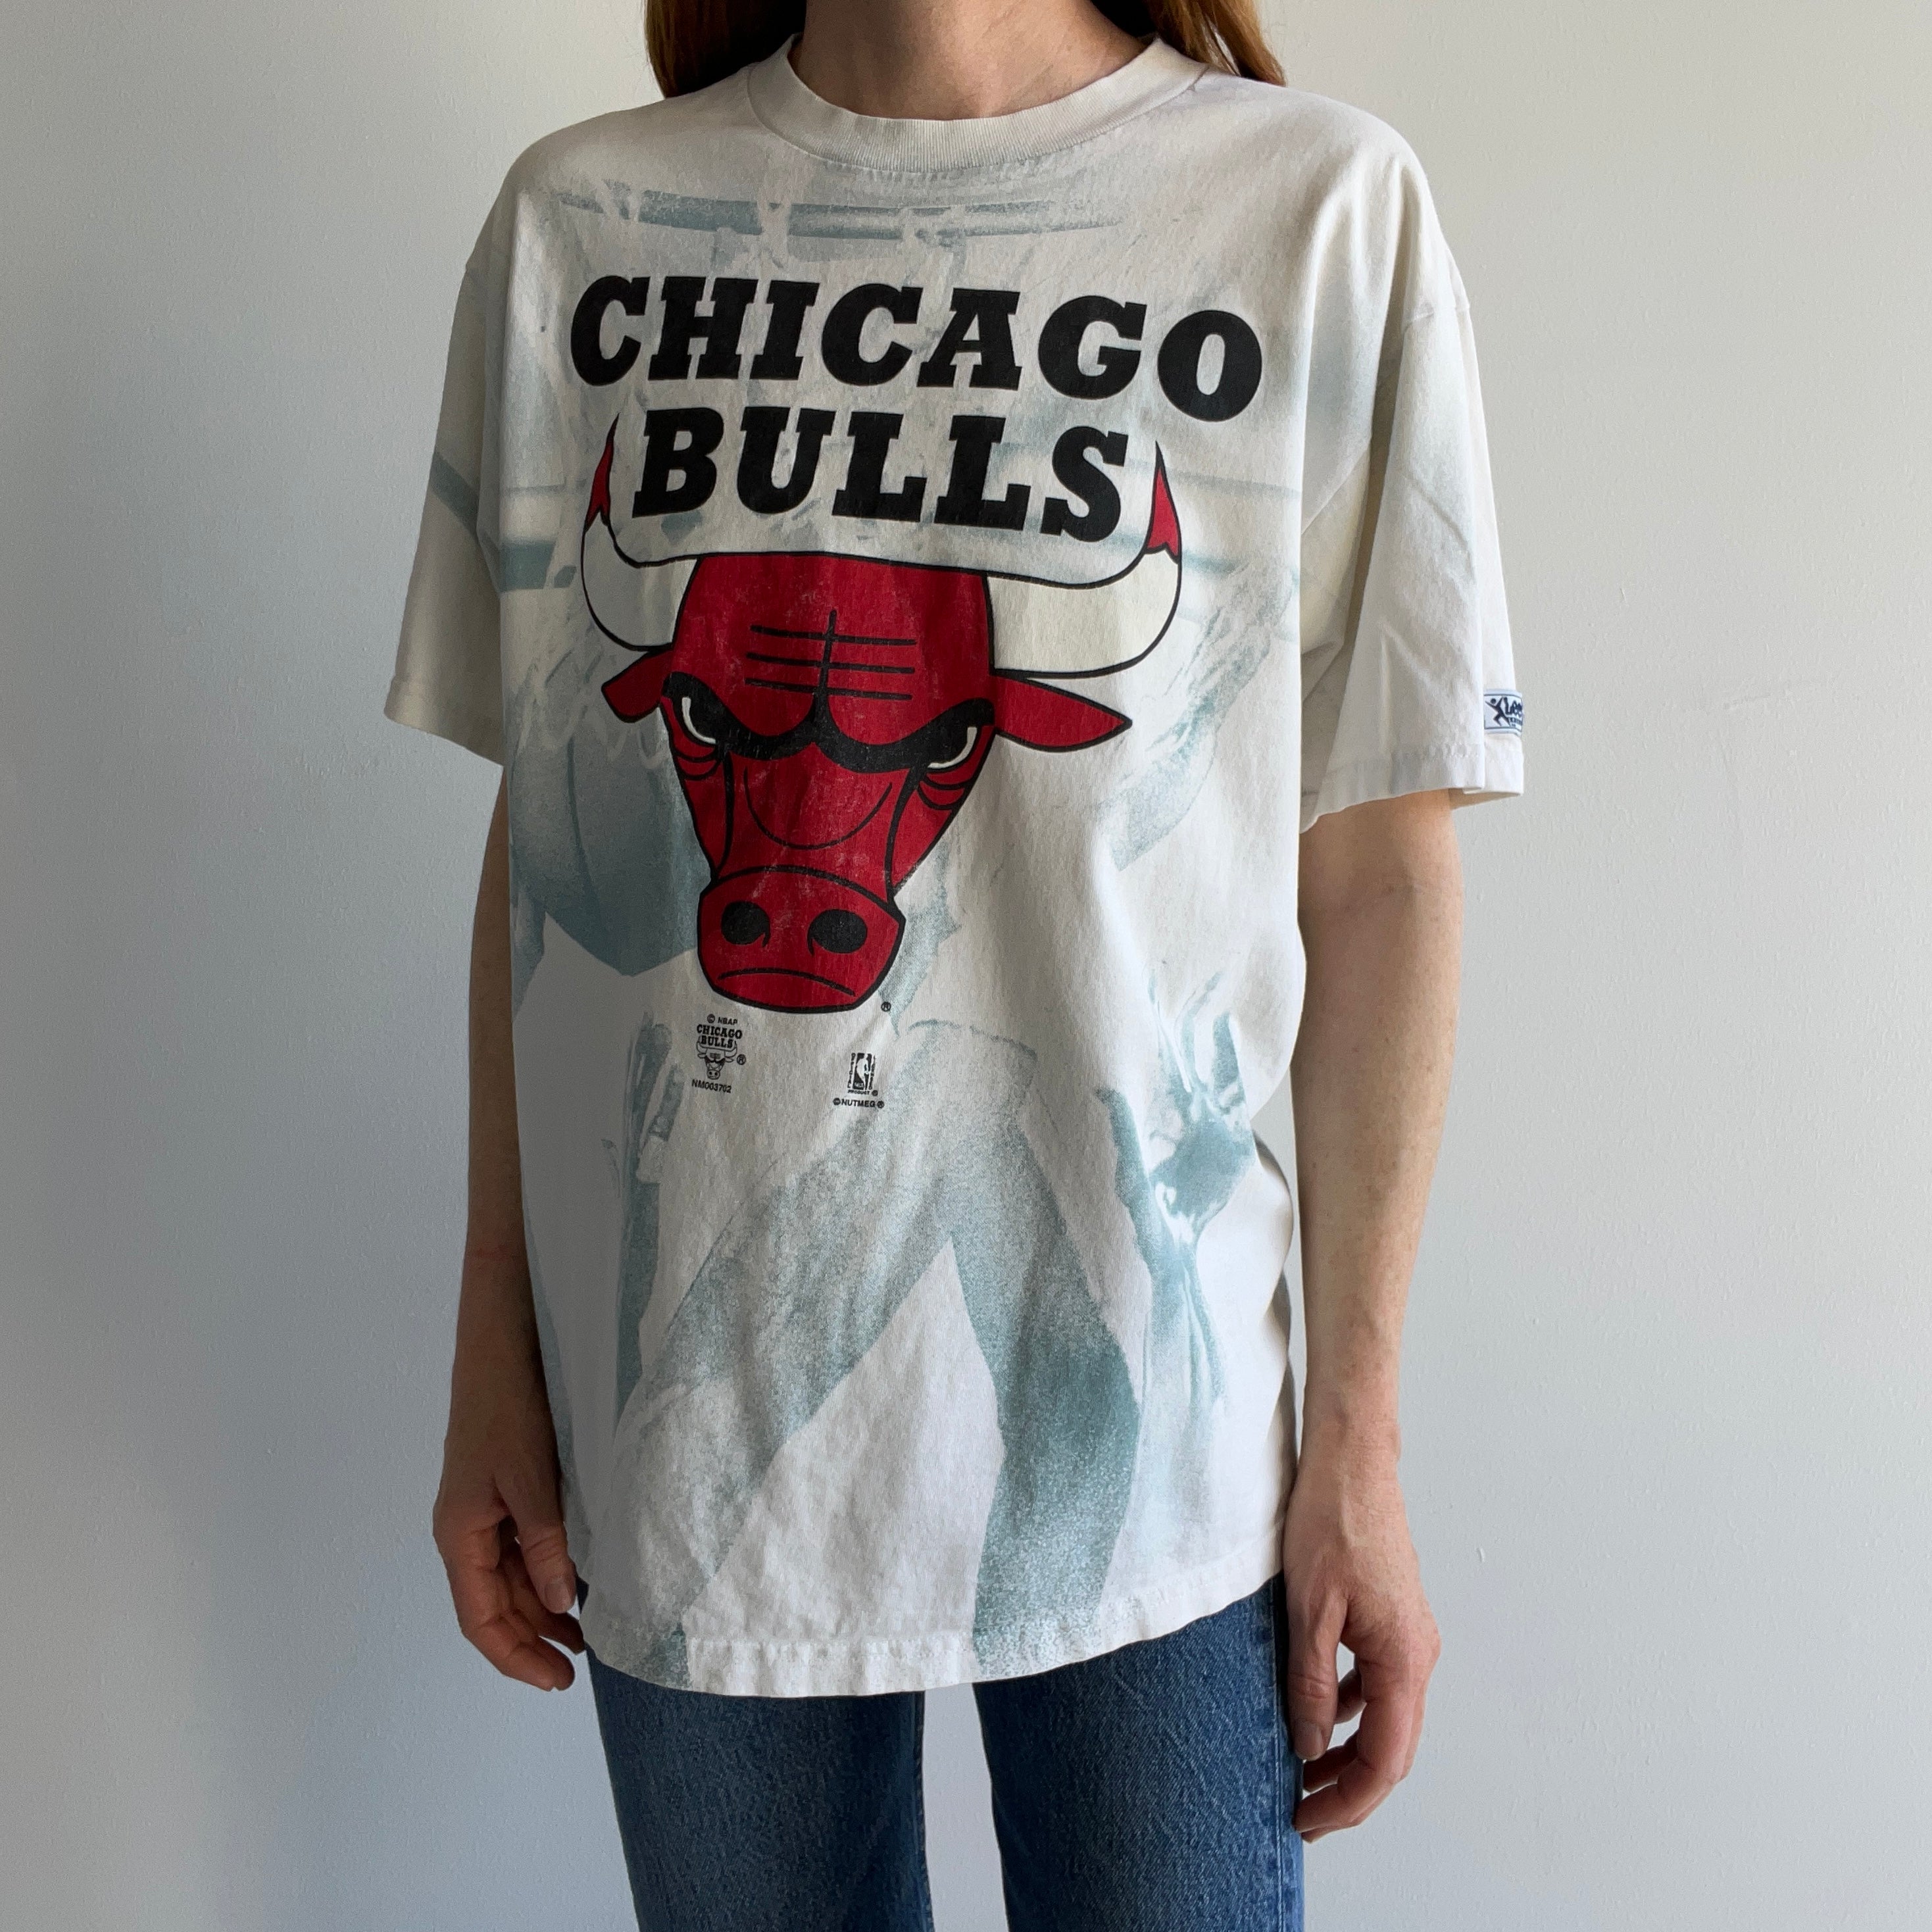 1990s Chicago Bulls by Lee Sport via Nutmeg